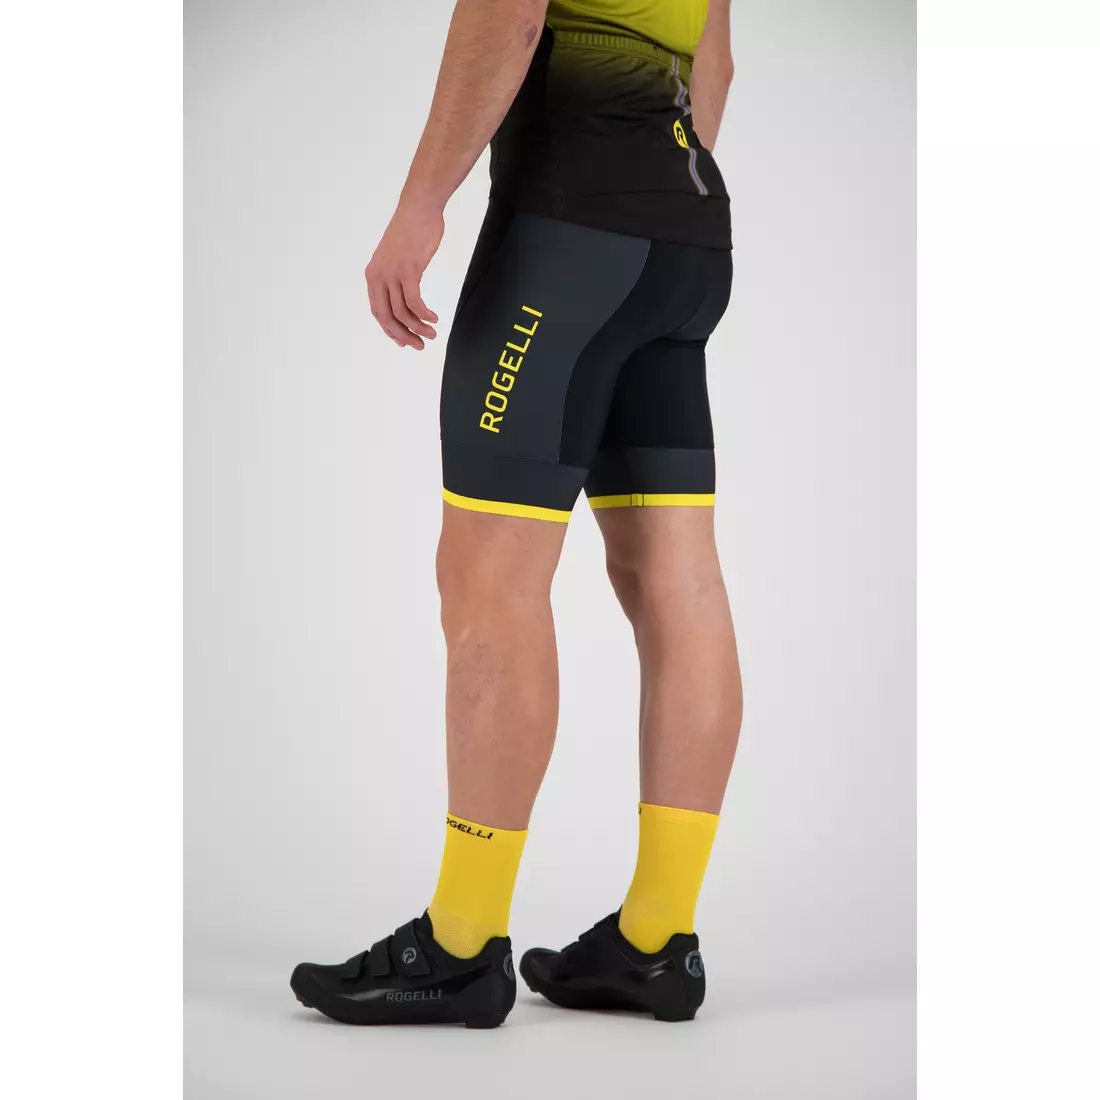 ROGELLI Fuse Men's bib shorts black/yellow 002.234